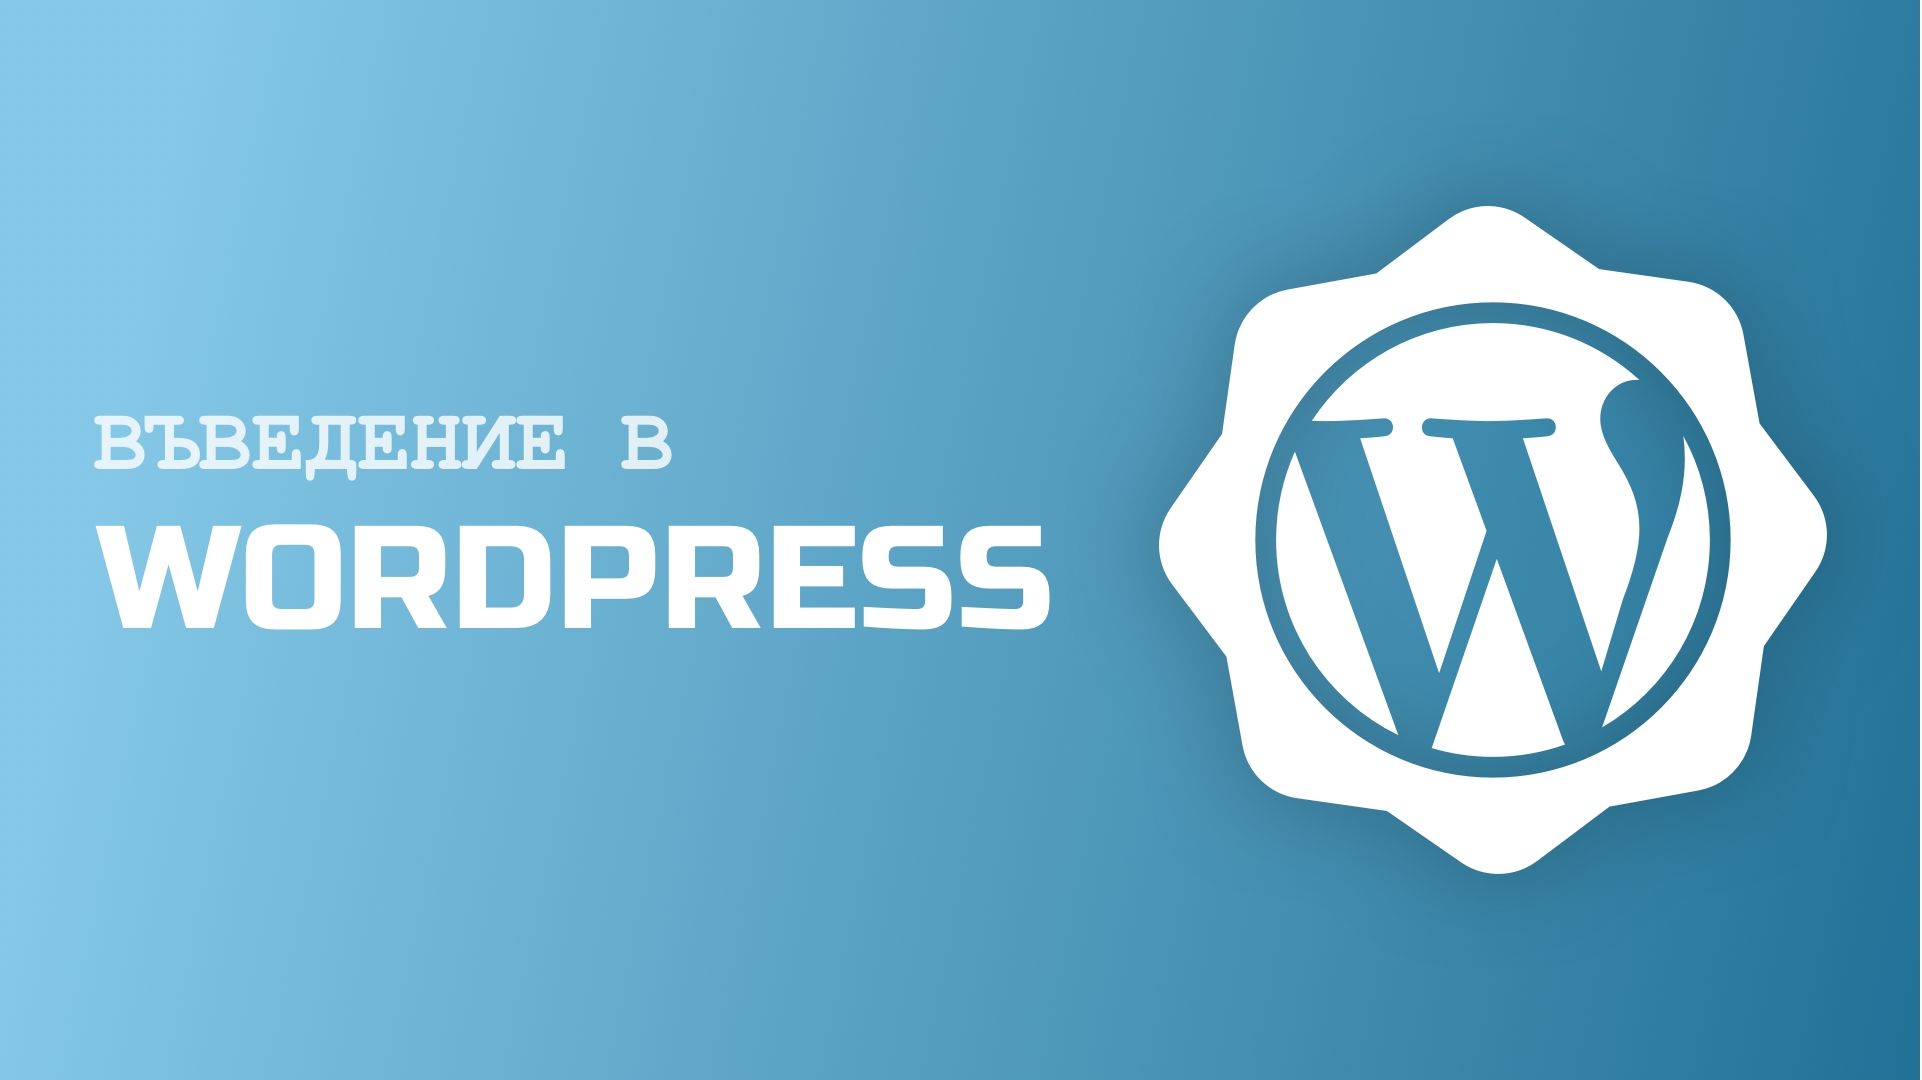 Въведение в WordPress: нов курс през юни 